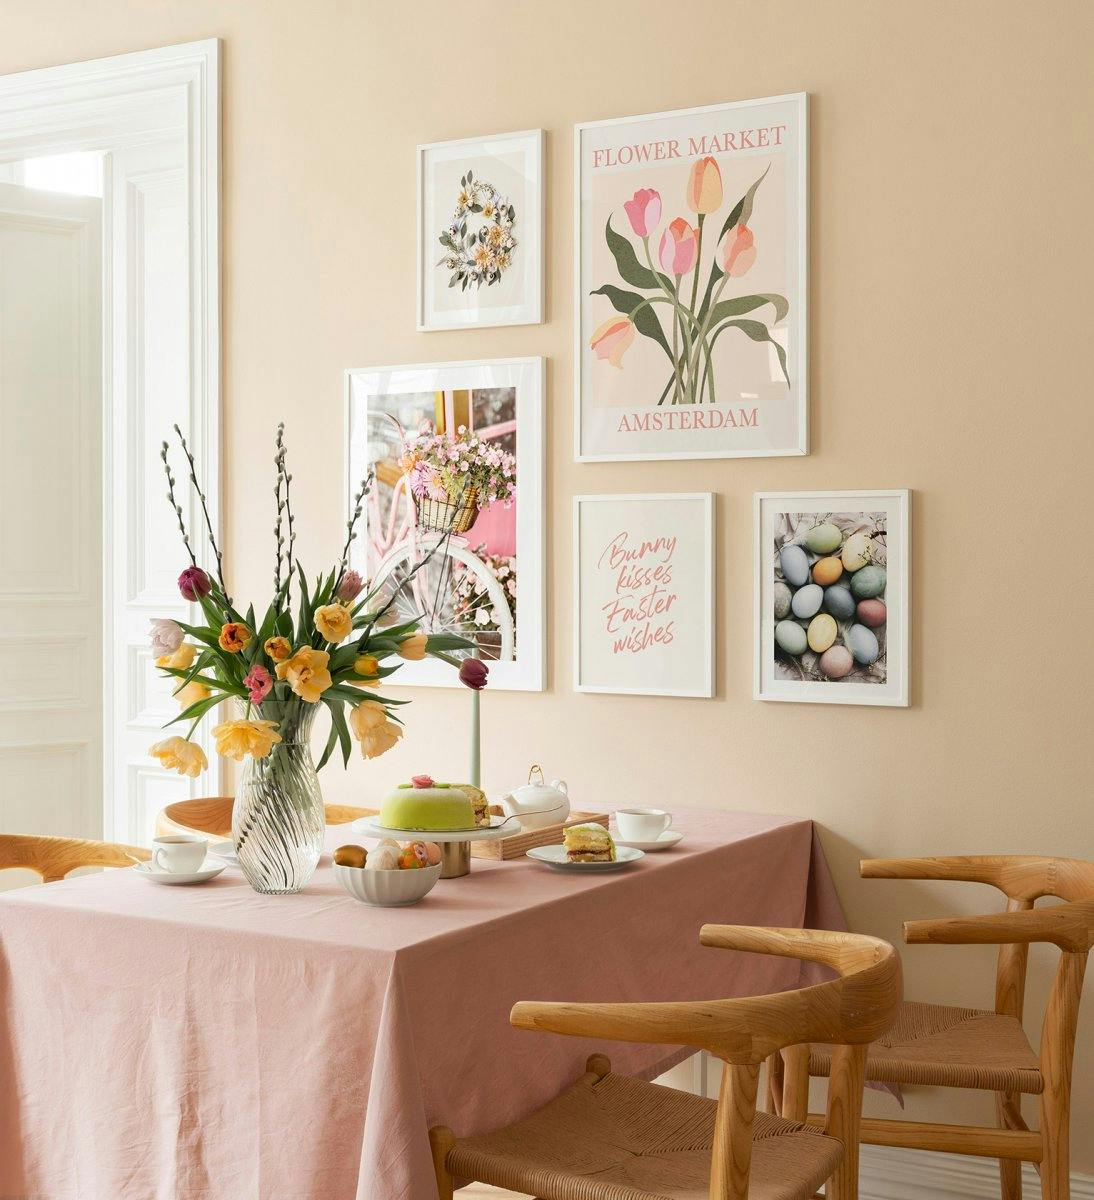 جدار معرض عيد الفصح مع الرسوم التوضيحية والصور بألوان الباستيل وإطارات الخشب الأبيض لغرفة الطعام